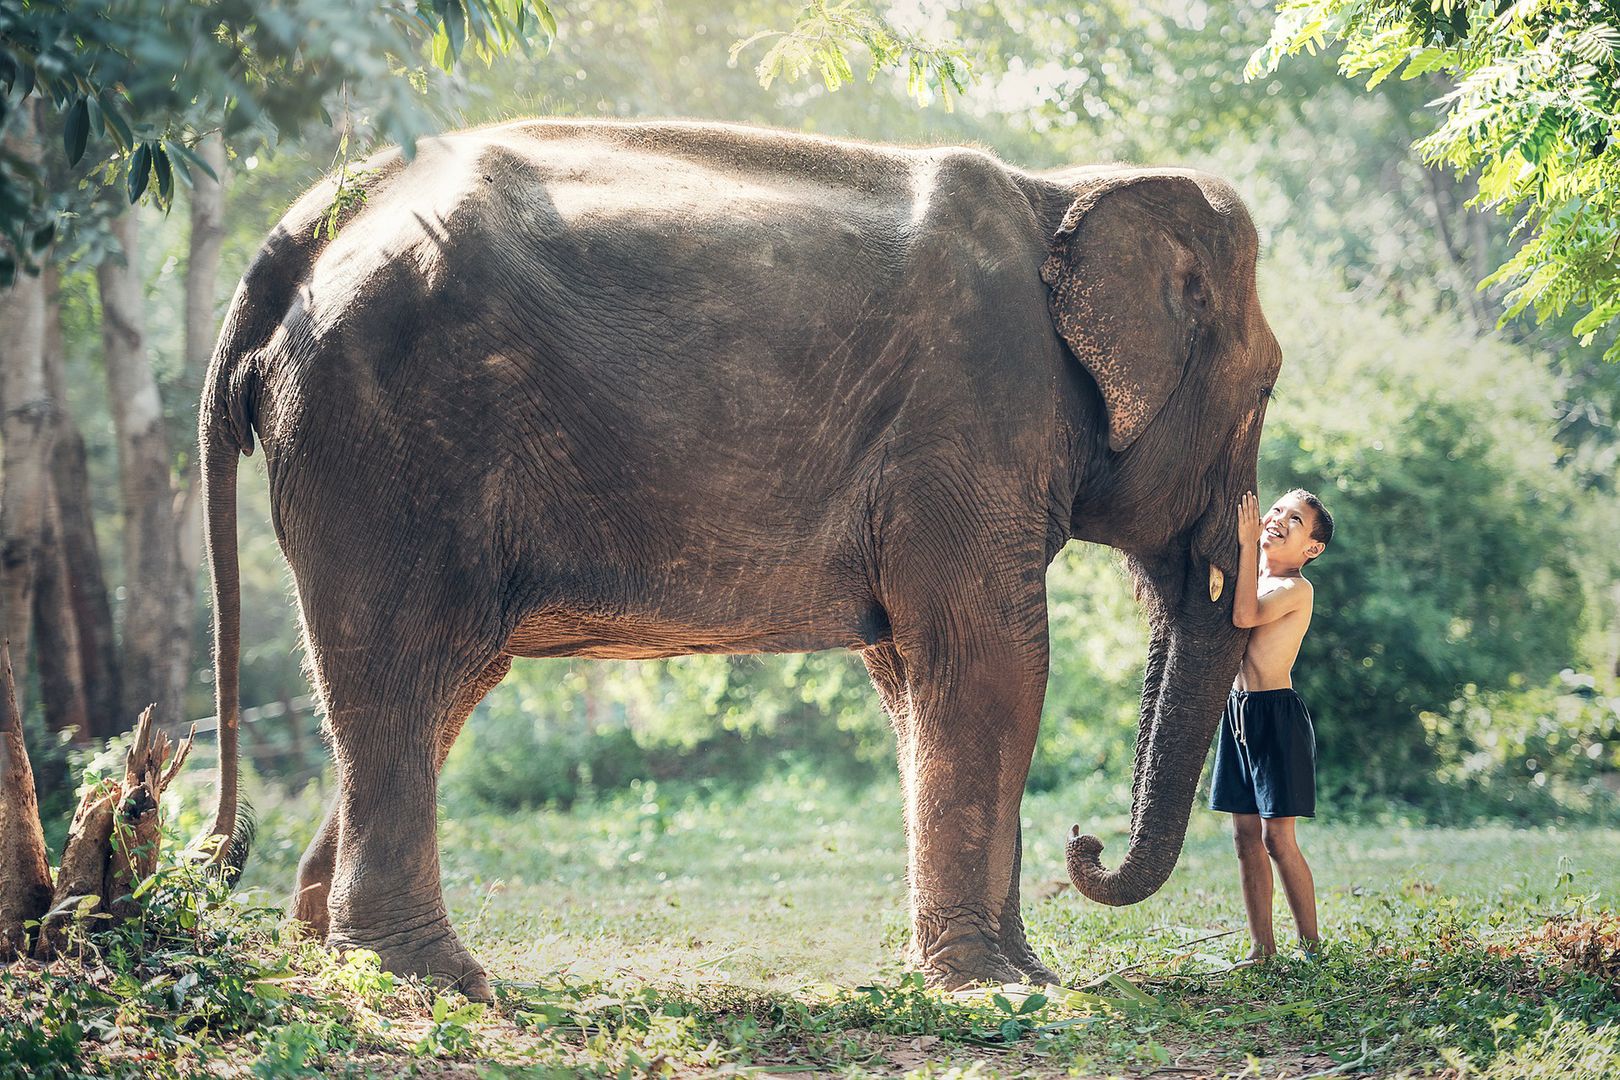 Fascynujące odkrycie. Słonie "zarażają się" ziewaniem od ludzi?